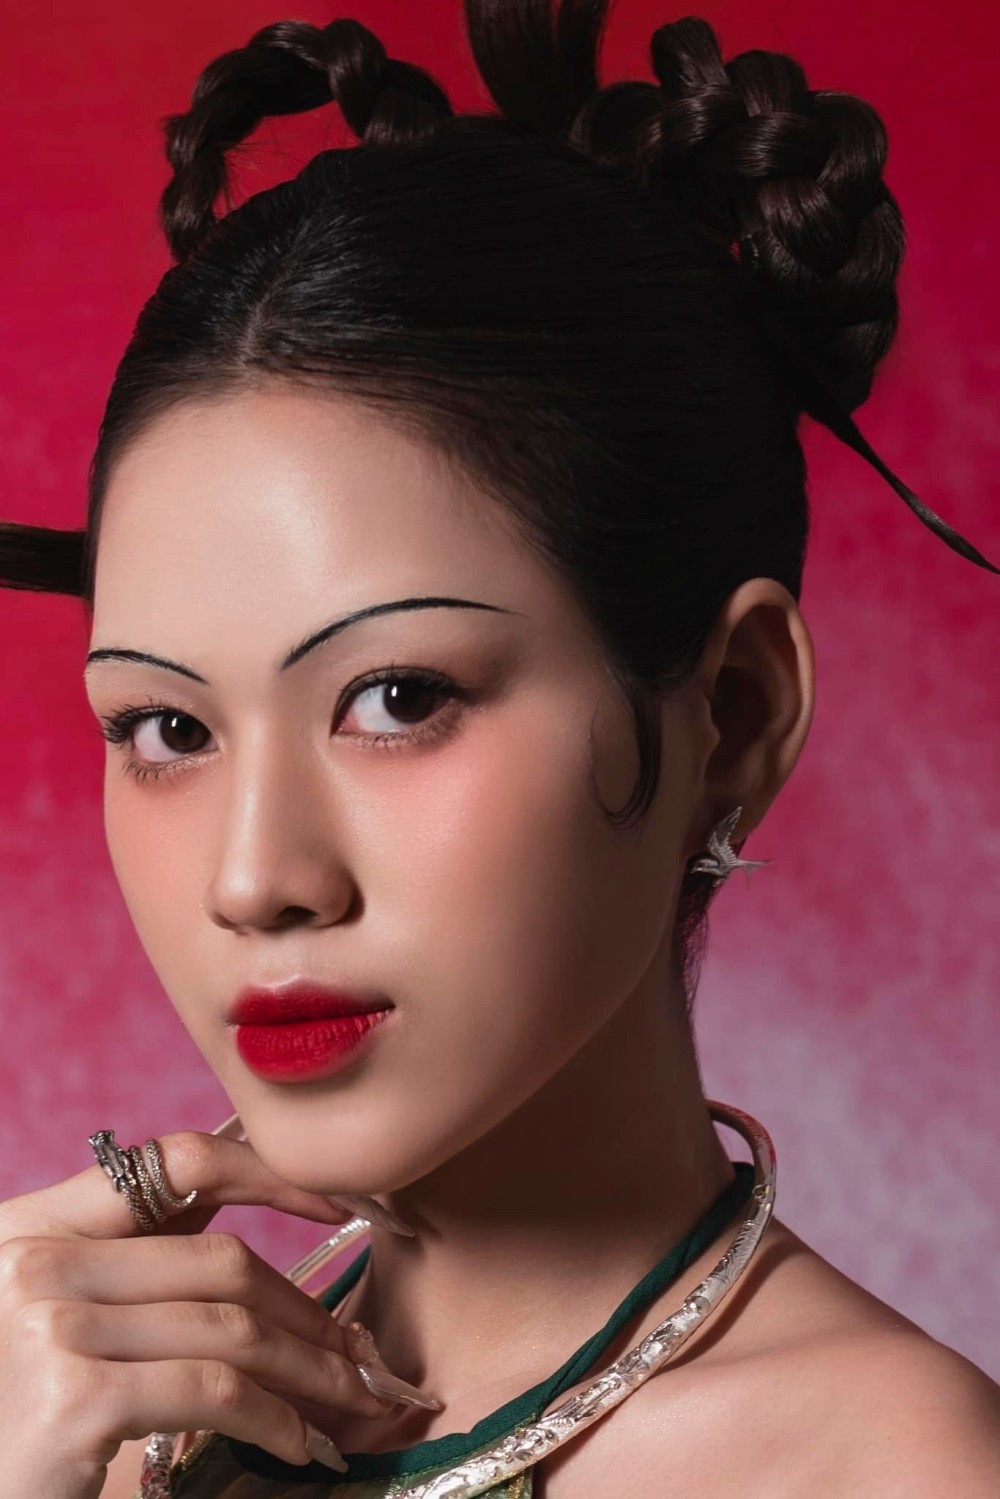 Hoa hậu Đỗ Thị Hà thử phong cách trang điểm lông mày siêu mảnh, trông ra sao?